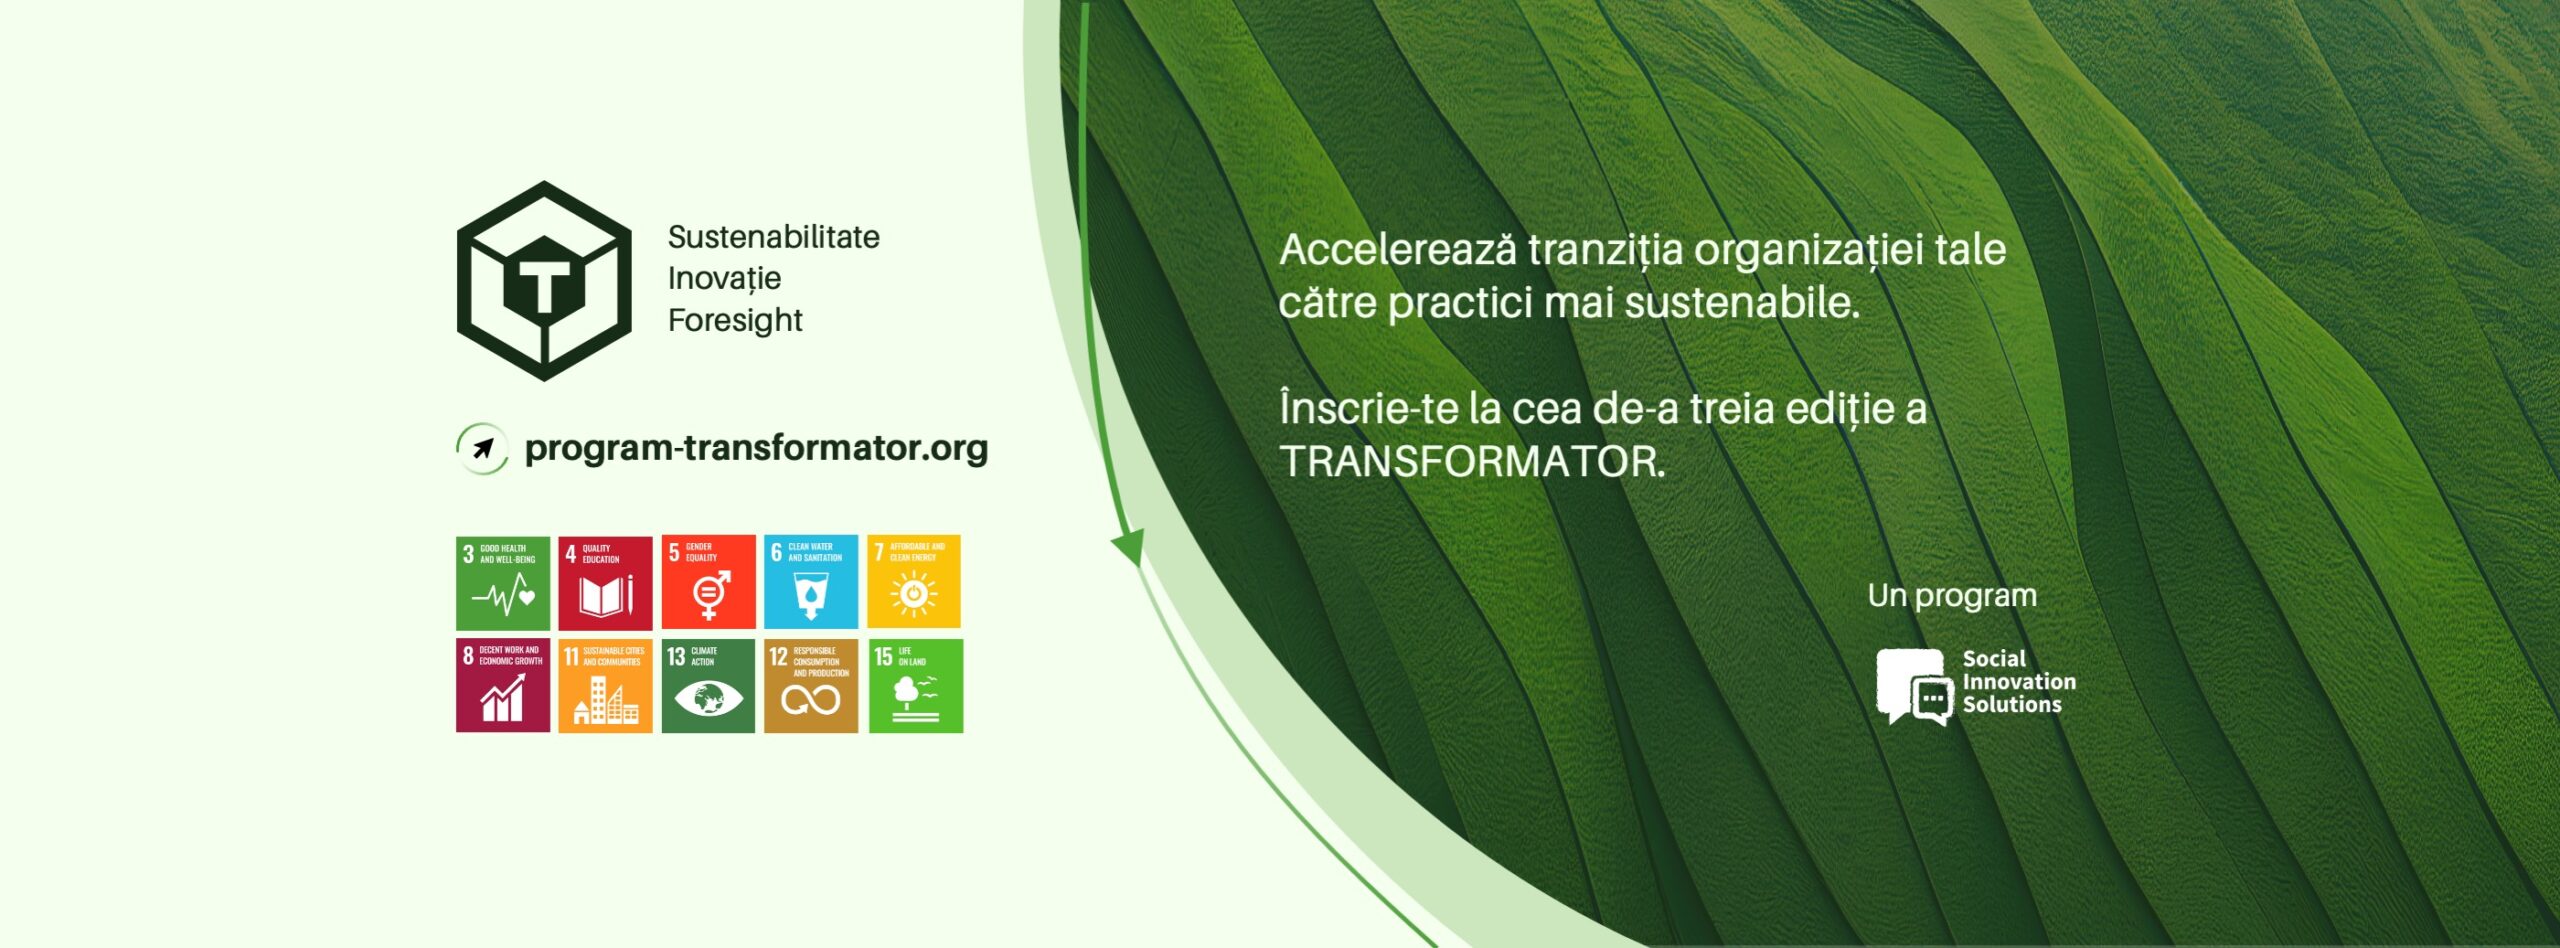 S-au deschis aplicațiile pentru TRANSFORMATOR, program de transformare sustenabilă a organizațiilor, aflat la cea de-a treia ediție